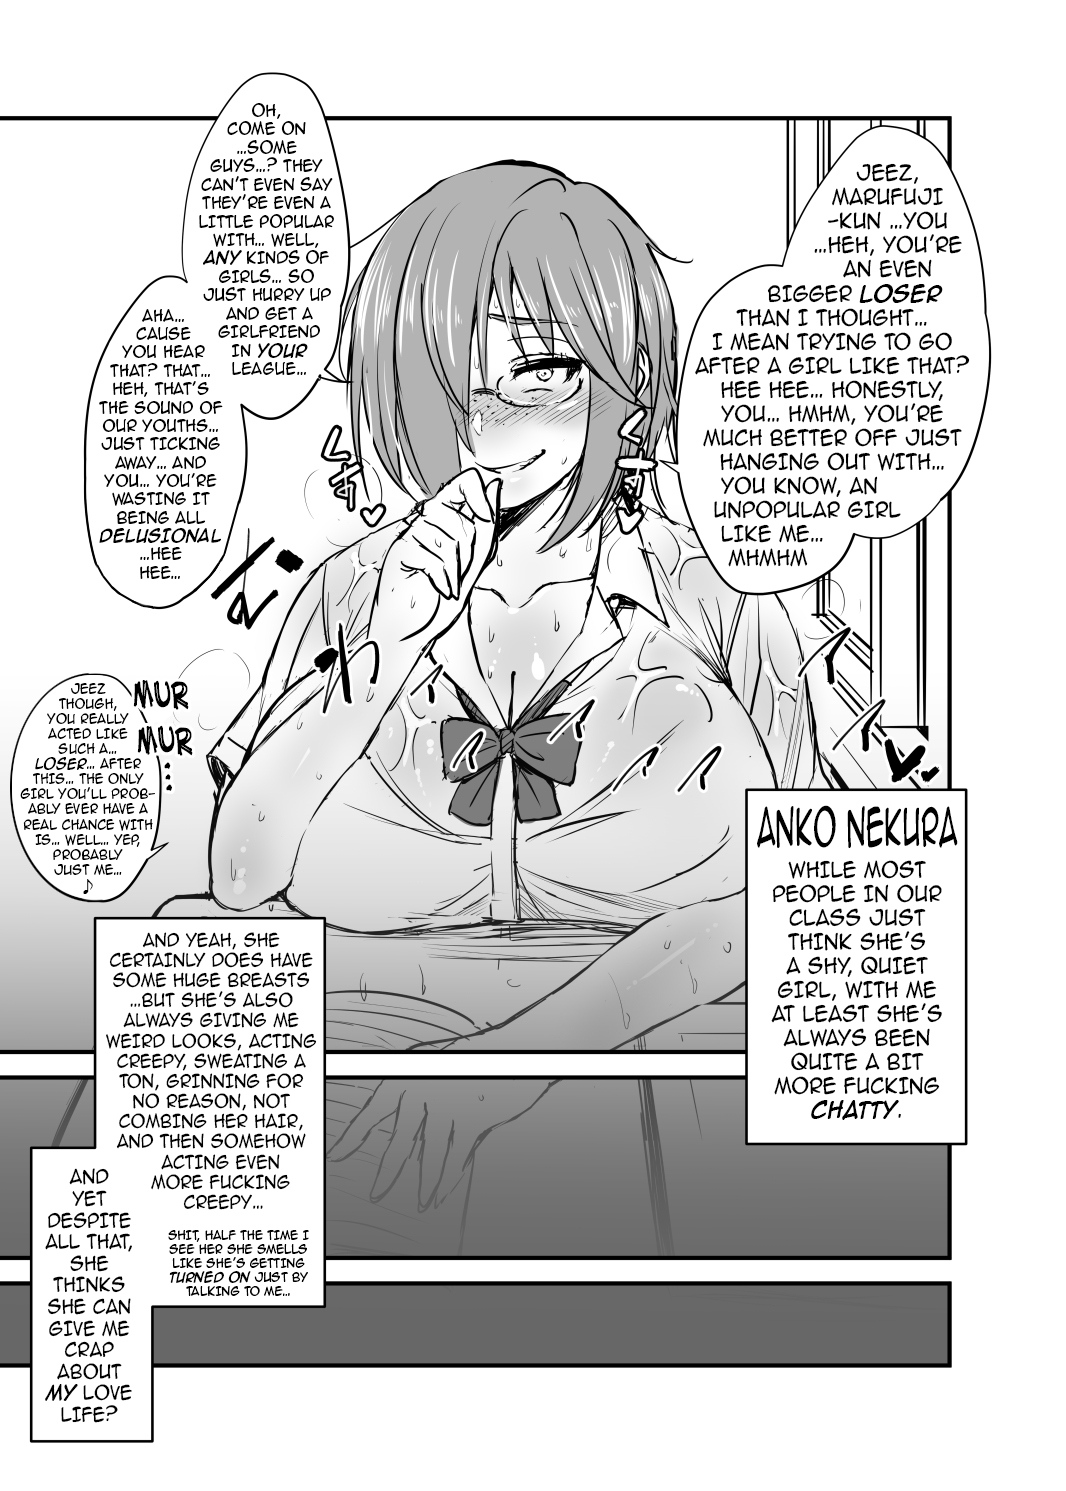 [Korotsuke] Nekura Megane ♀ | The Creepy Glasses Girl [English] [Ongoing] {darknight} page 2 full